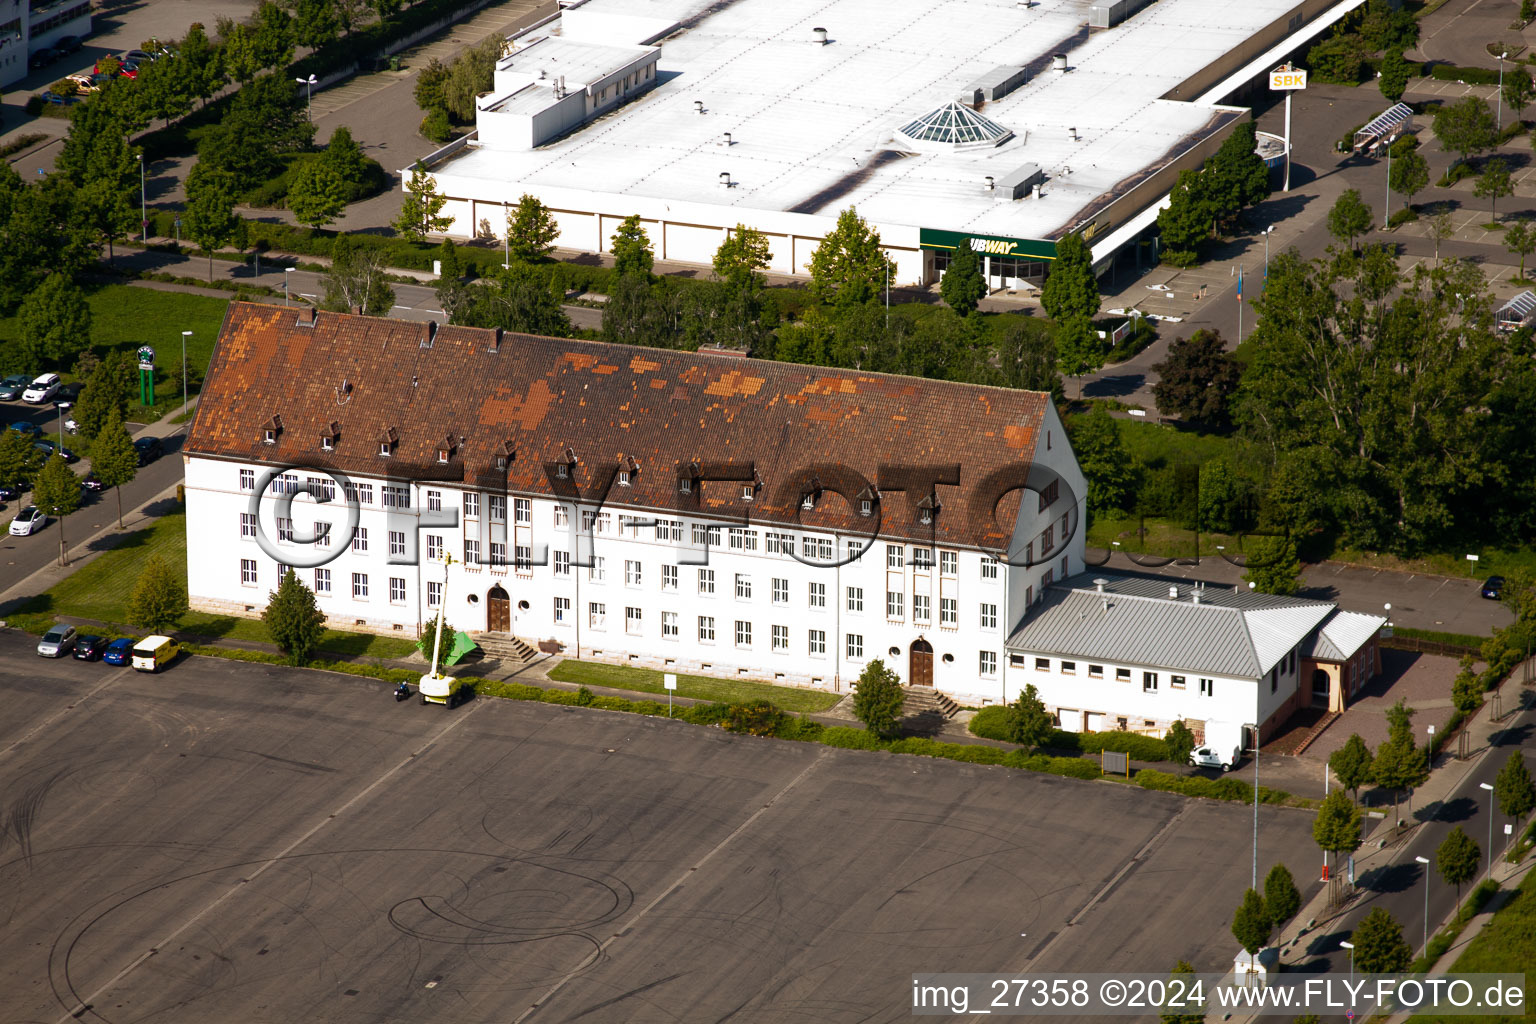 Quartier Queichheim in Landau in der Pfalz dans le département Rhénanie-Palatinat, Allemagne vu d'un drone